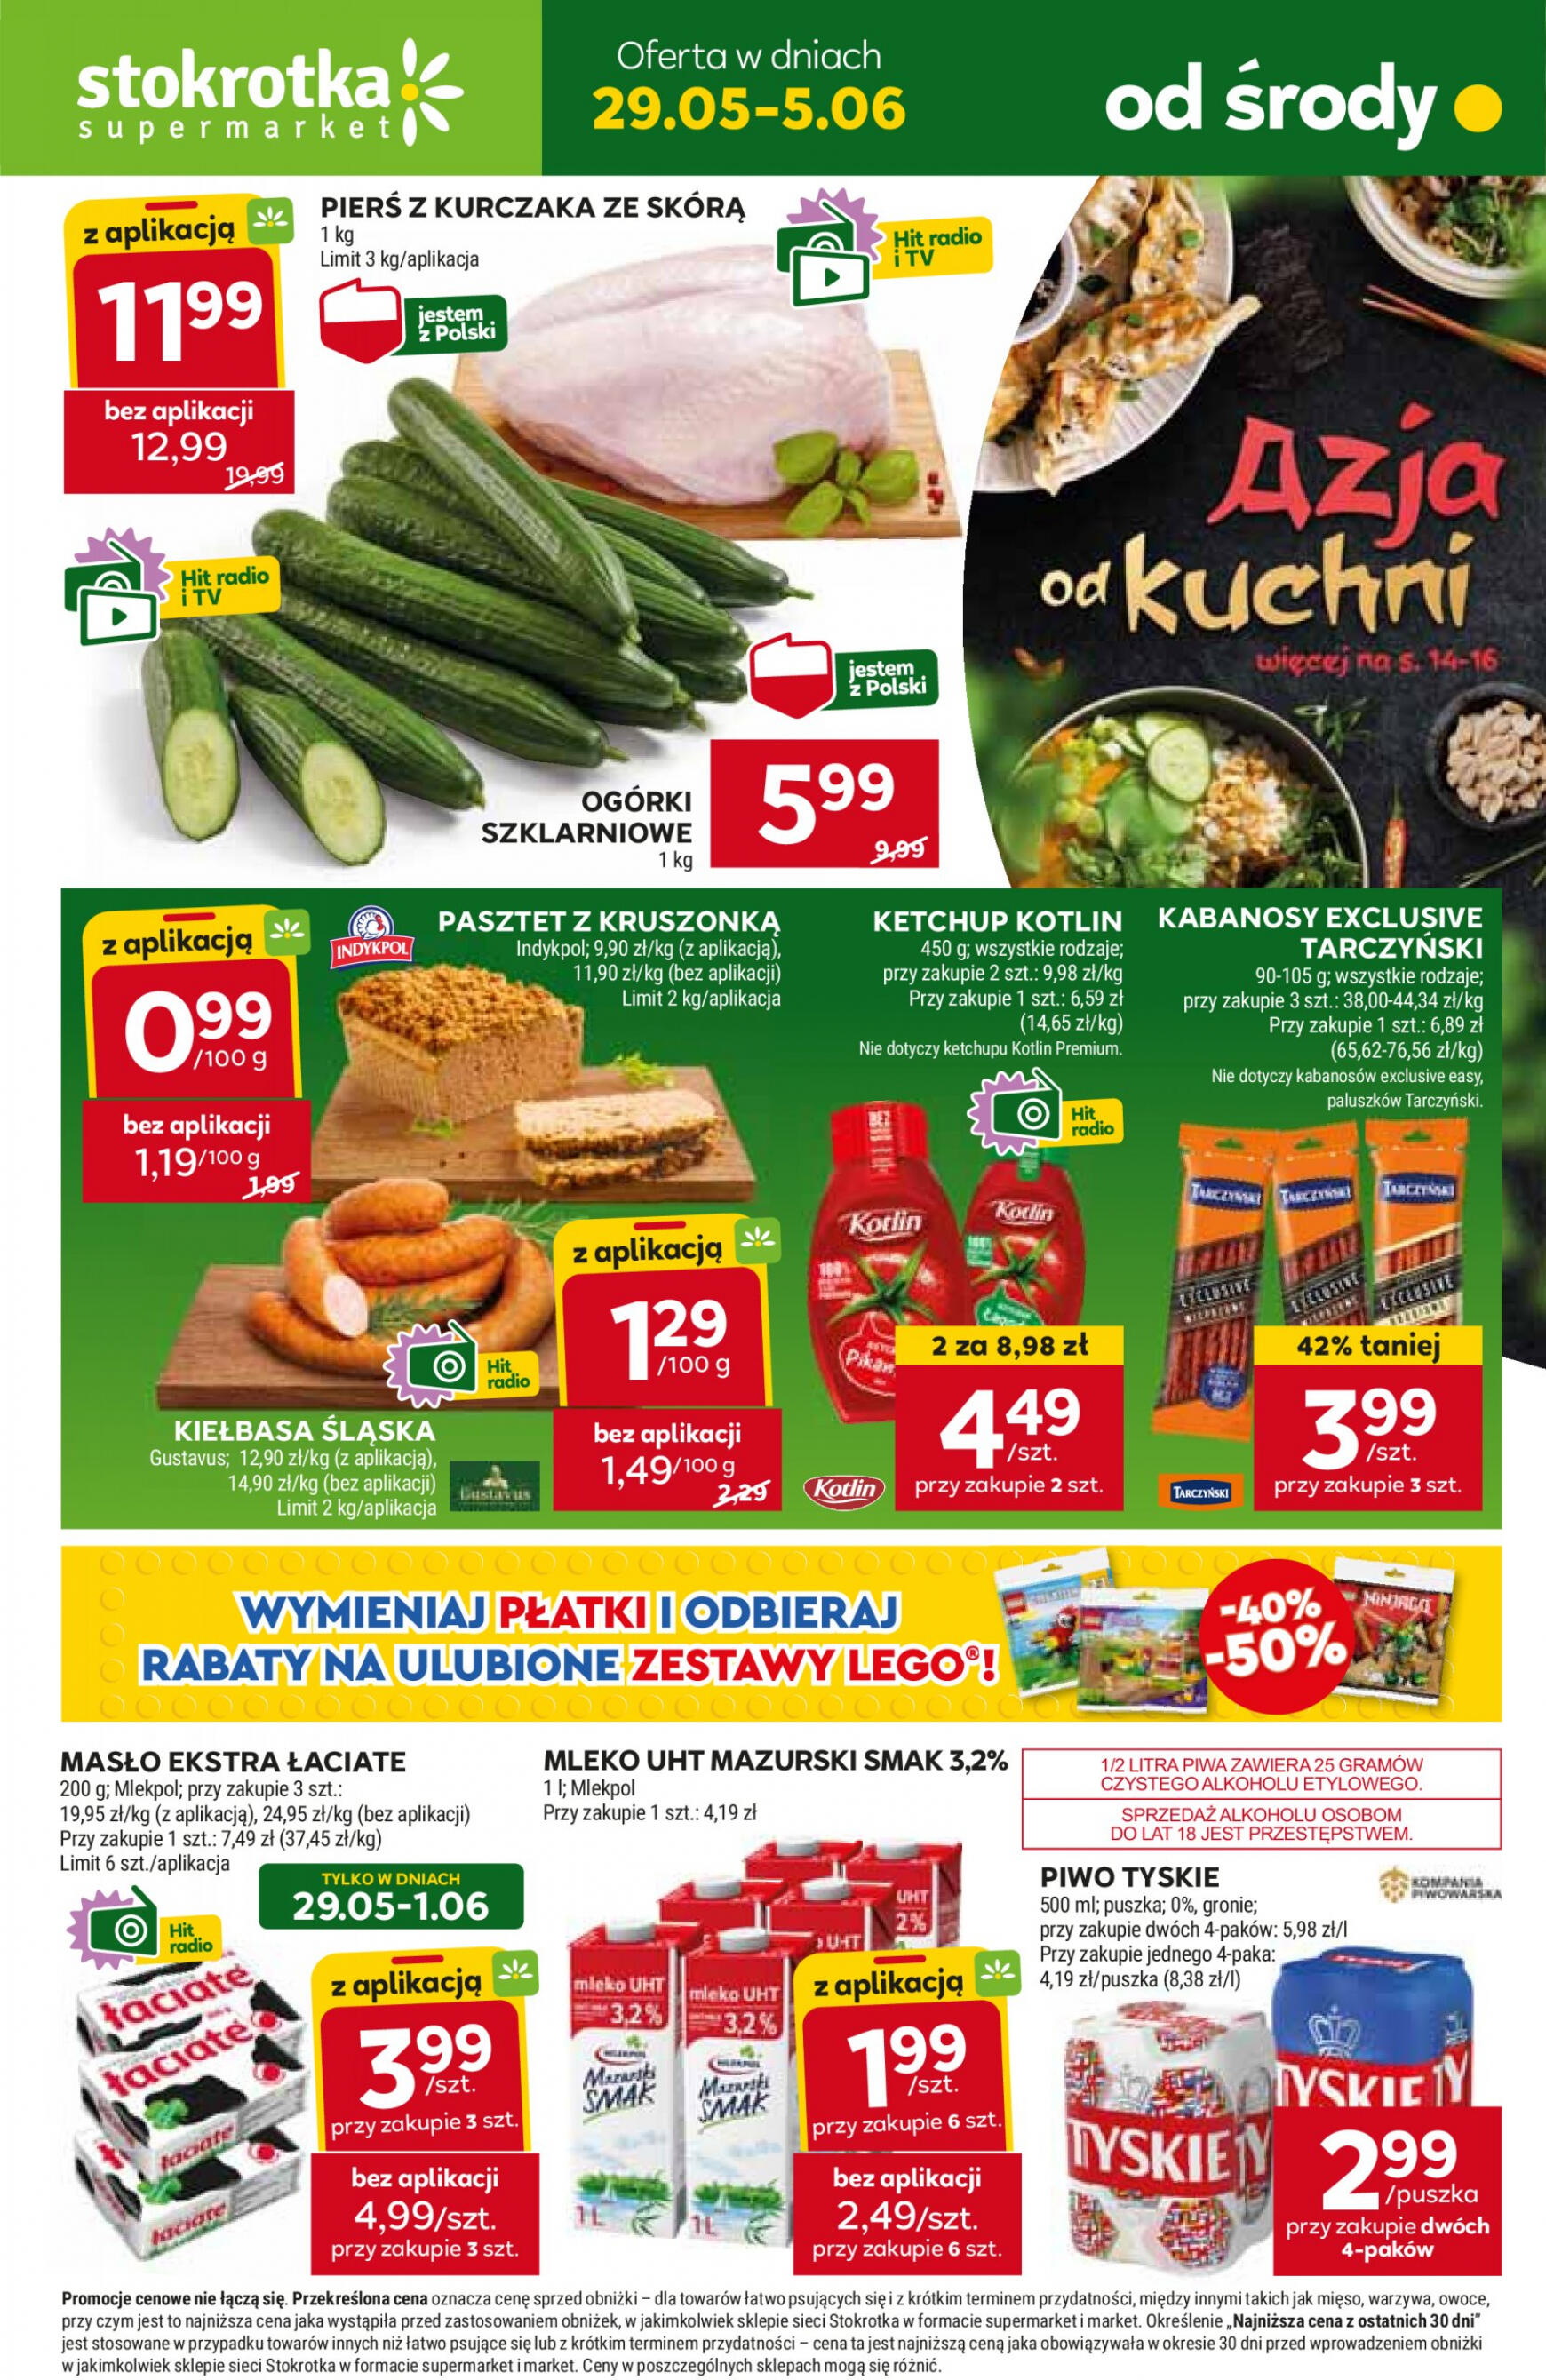 stokrotka - Stokrotka - Supermarket gazetka aktualna ważna od 29.05. - 05.06.